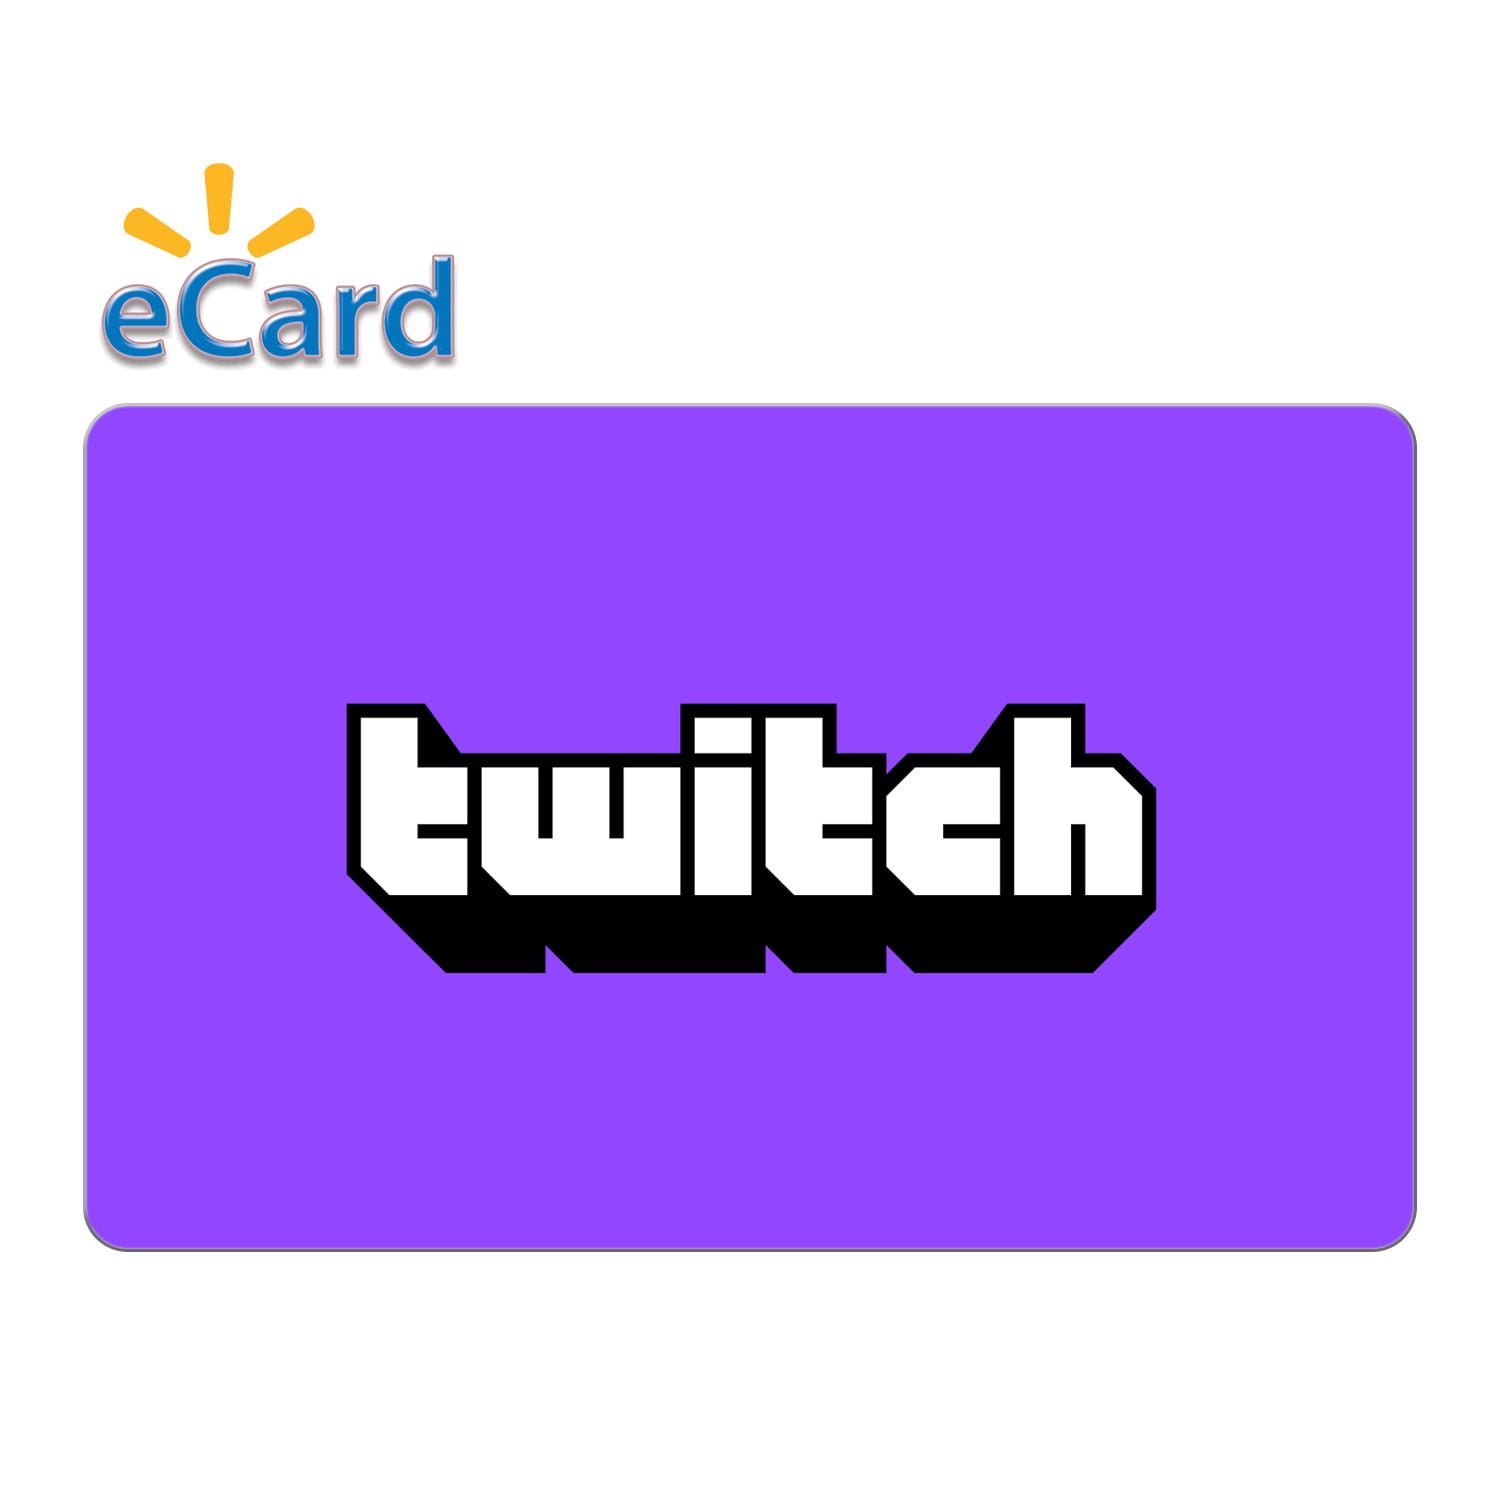 $25 Twitch eGift Card